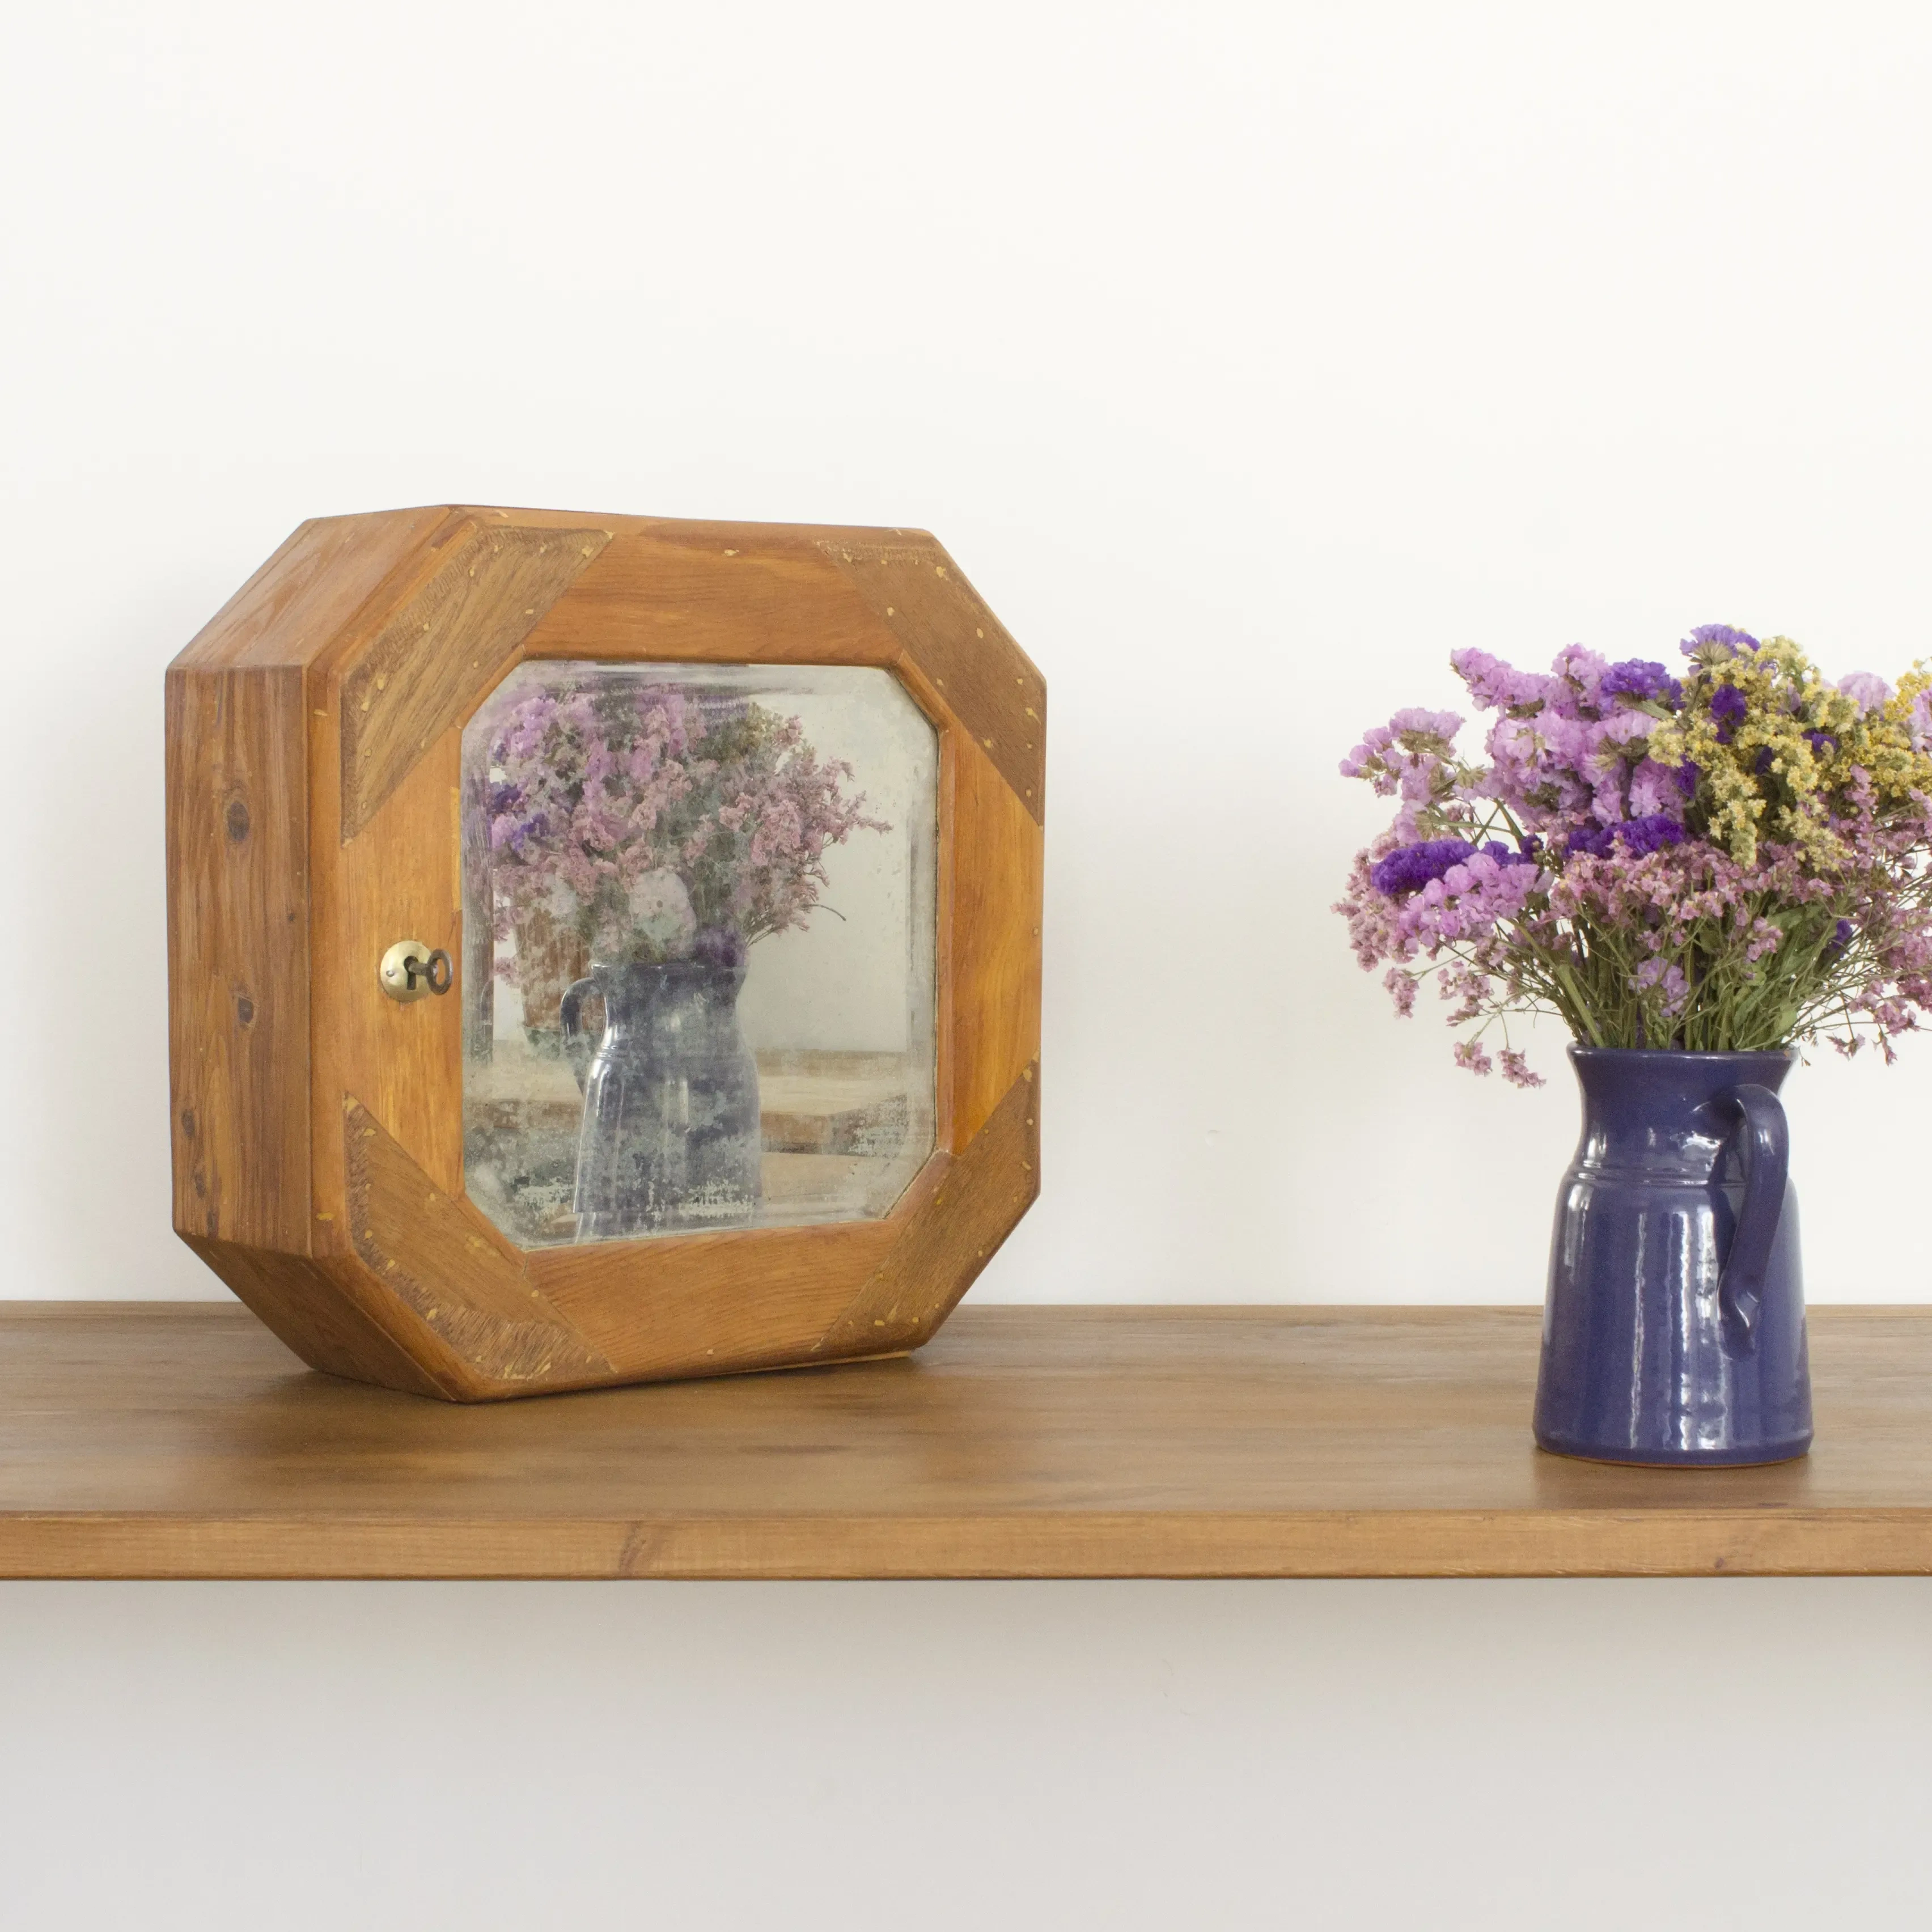 Jarrón con flores junto a botiquín de medicinas de madera con espejo.